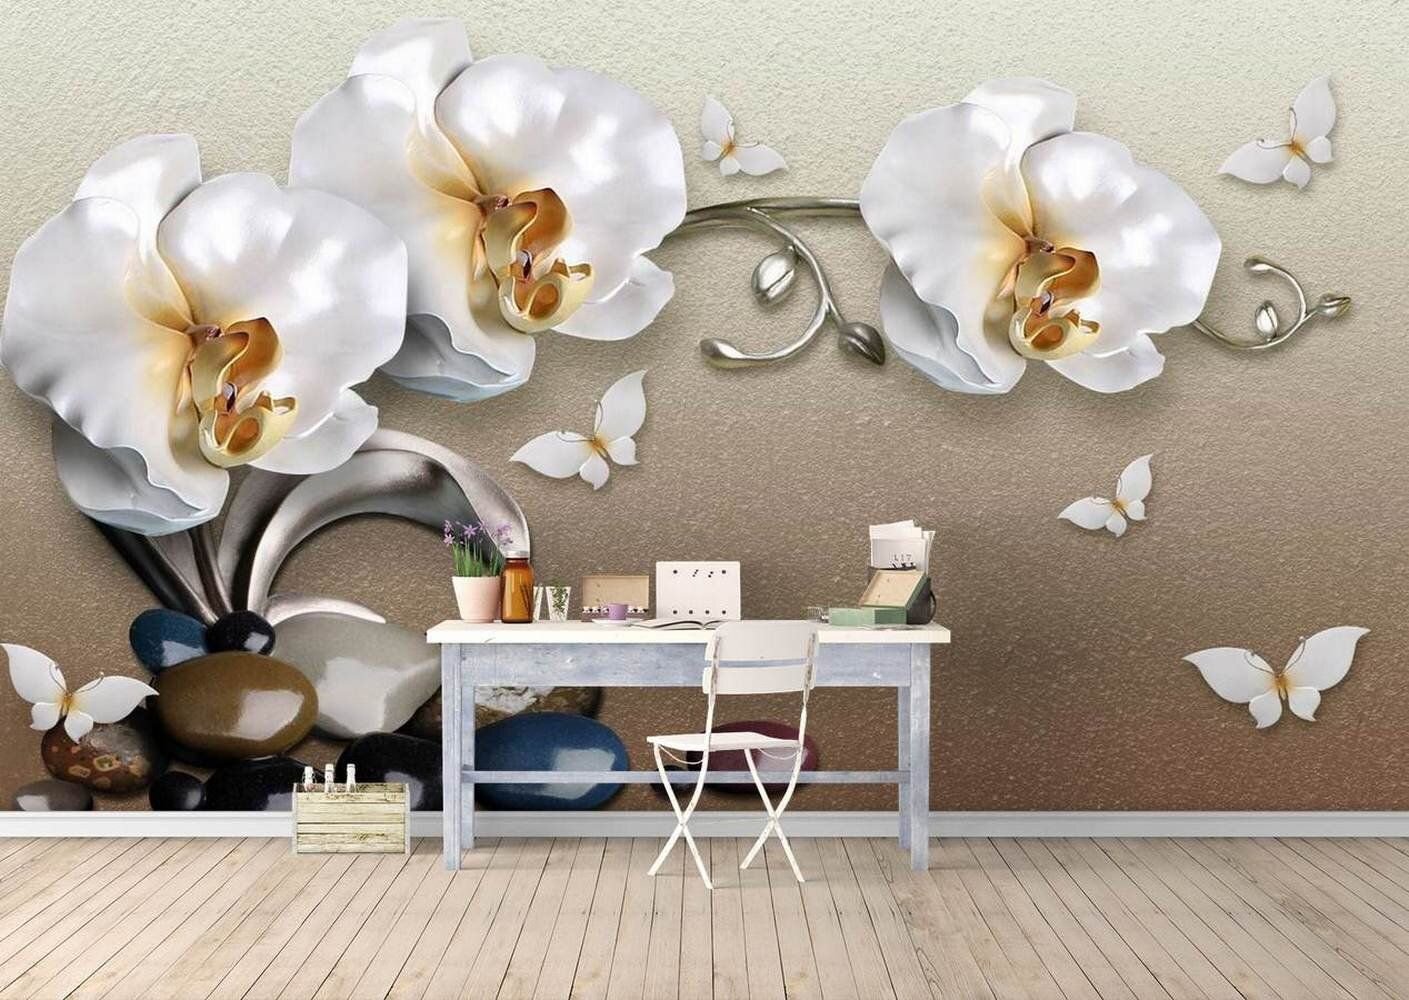 Обои в зал на потолке орхидеи. обои для стен с орхидеями, используем в интерьере цветочную тематику. правила подбора декоративных материалов для кухни